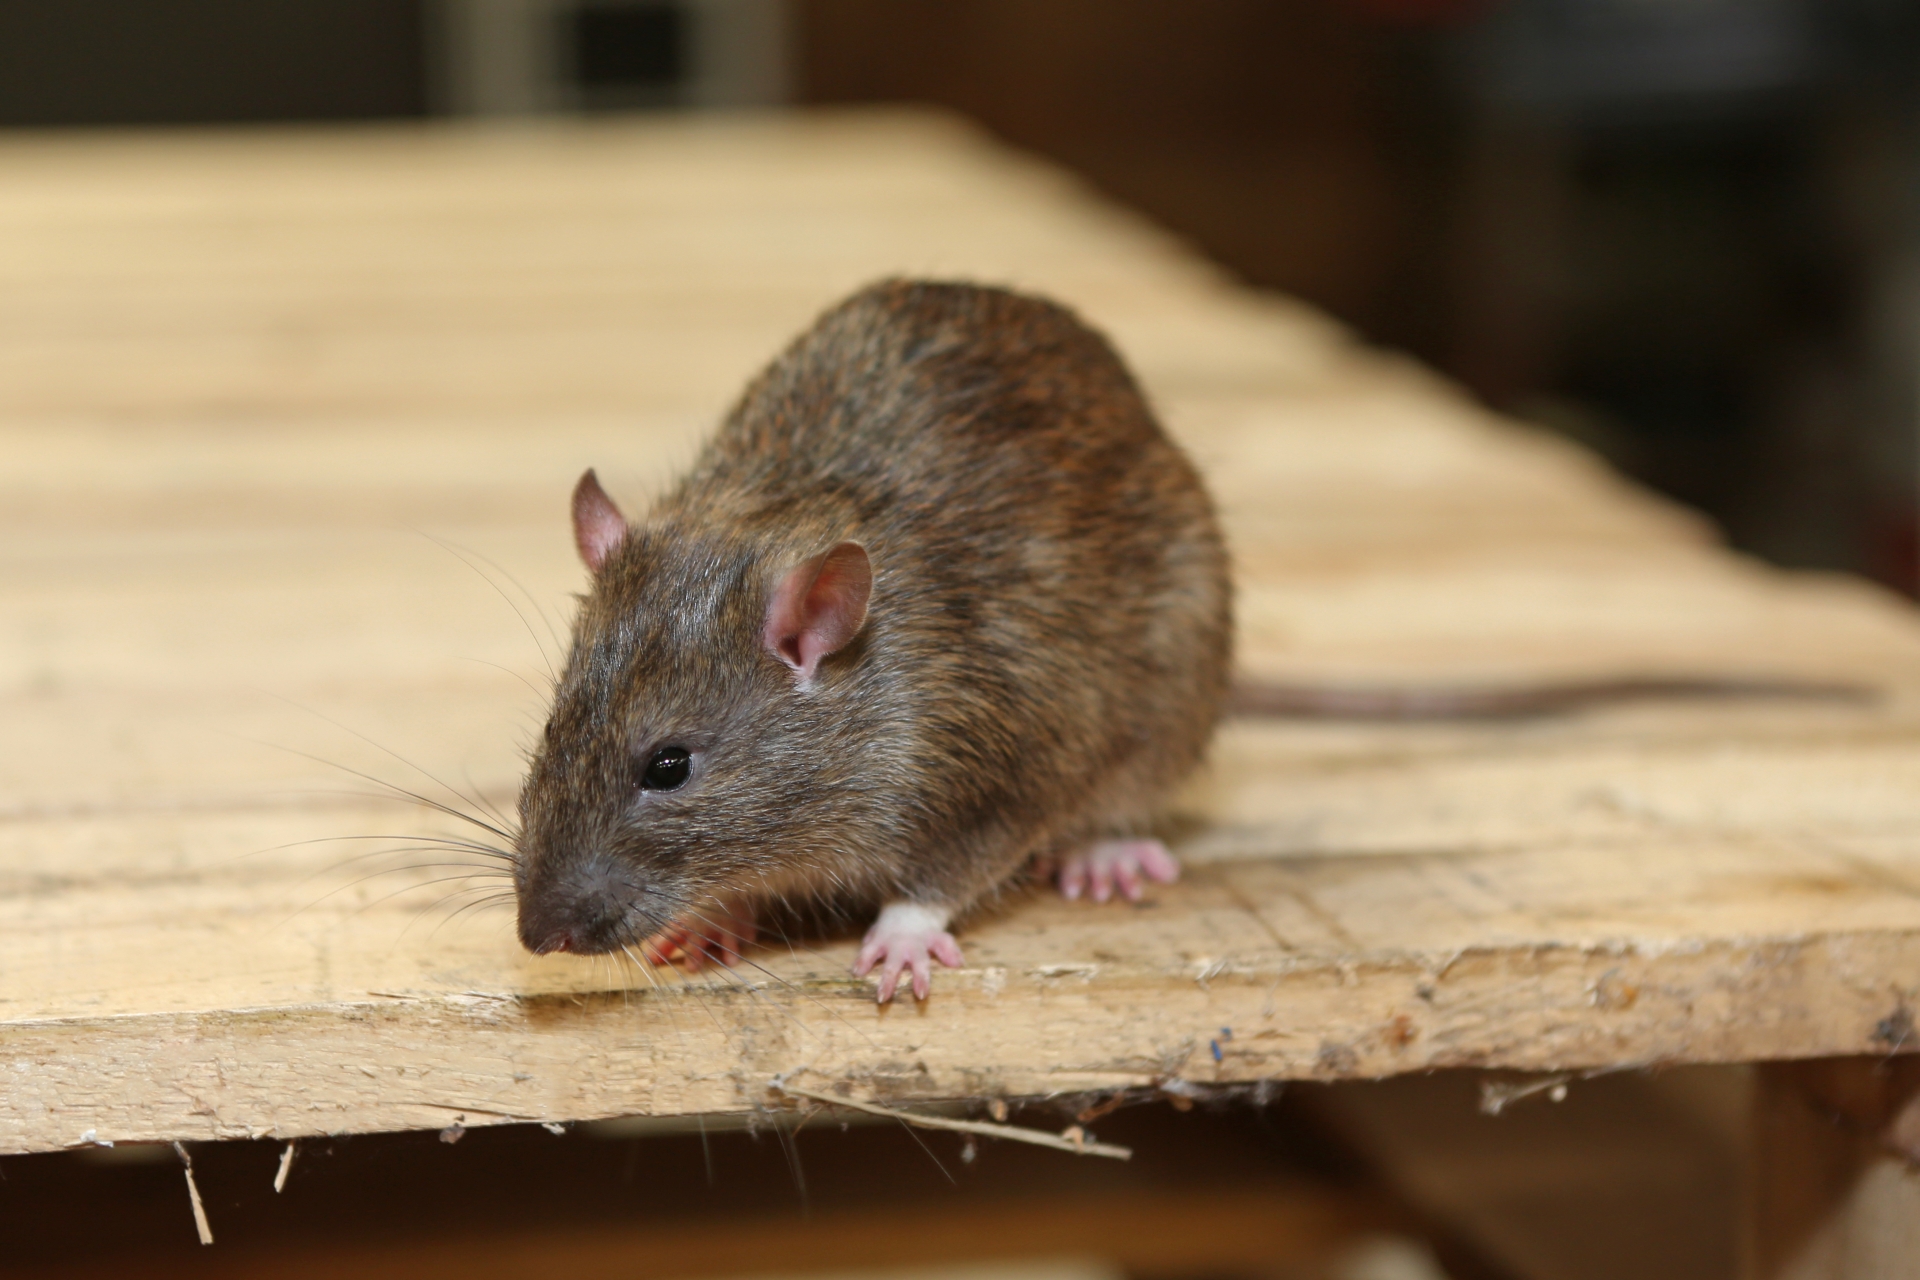 Rat extermination, Pest Control in Sydenham, SE26. Call Now 020 8166 9746